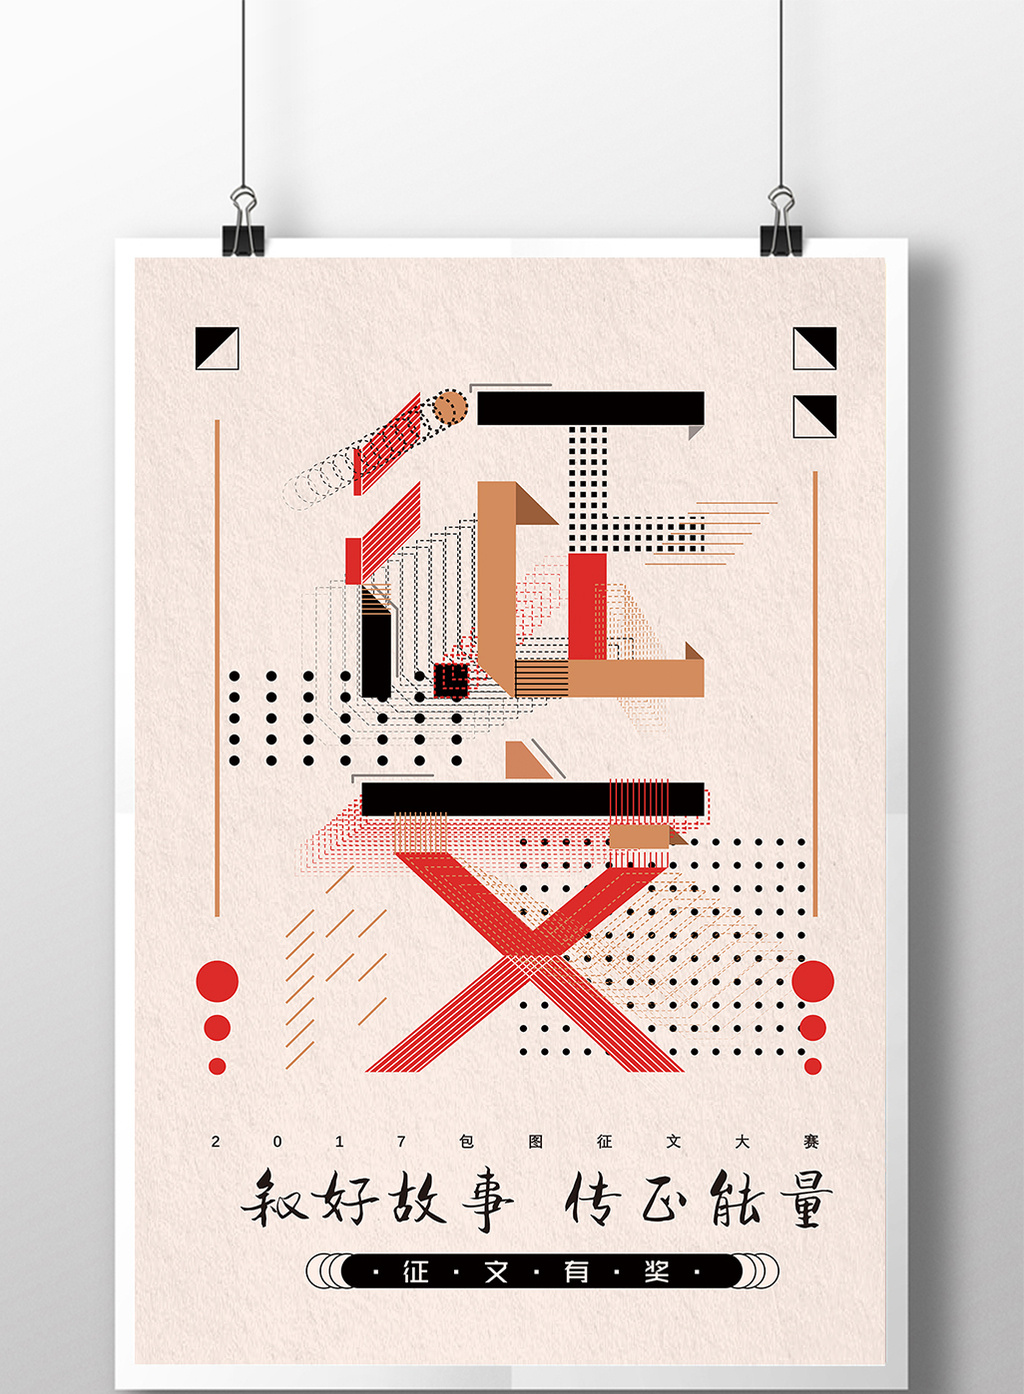 征文几何图形风格创意海报设计素材免费下载,本次作品主题是广告设计